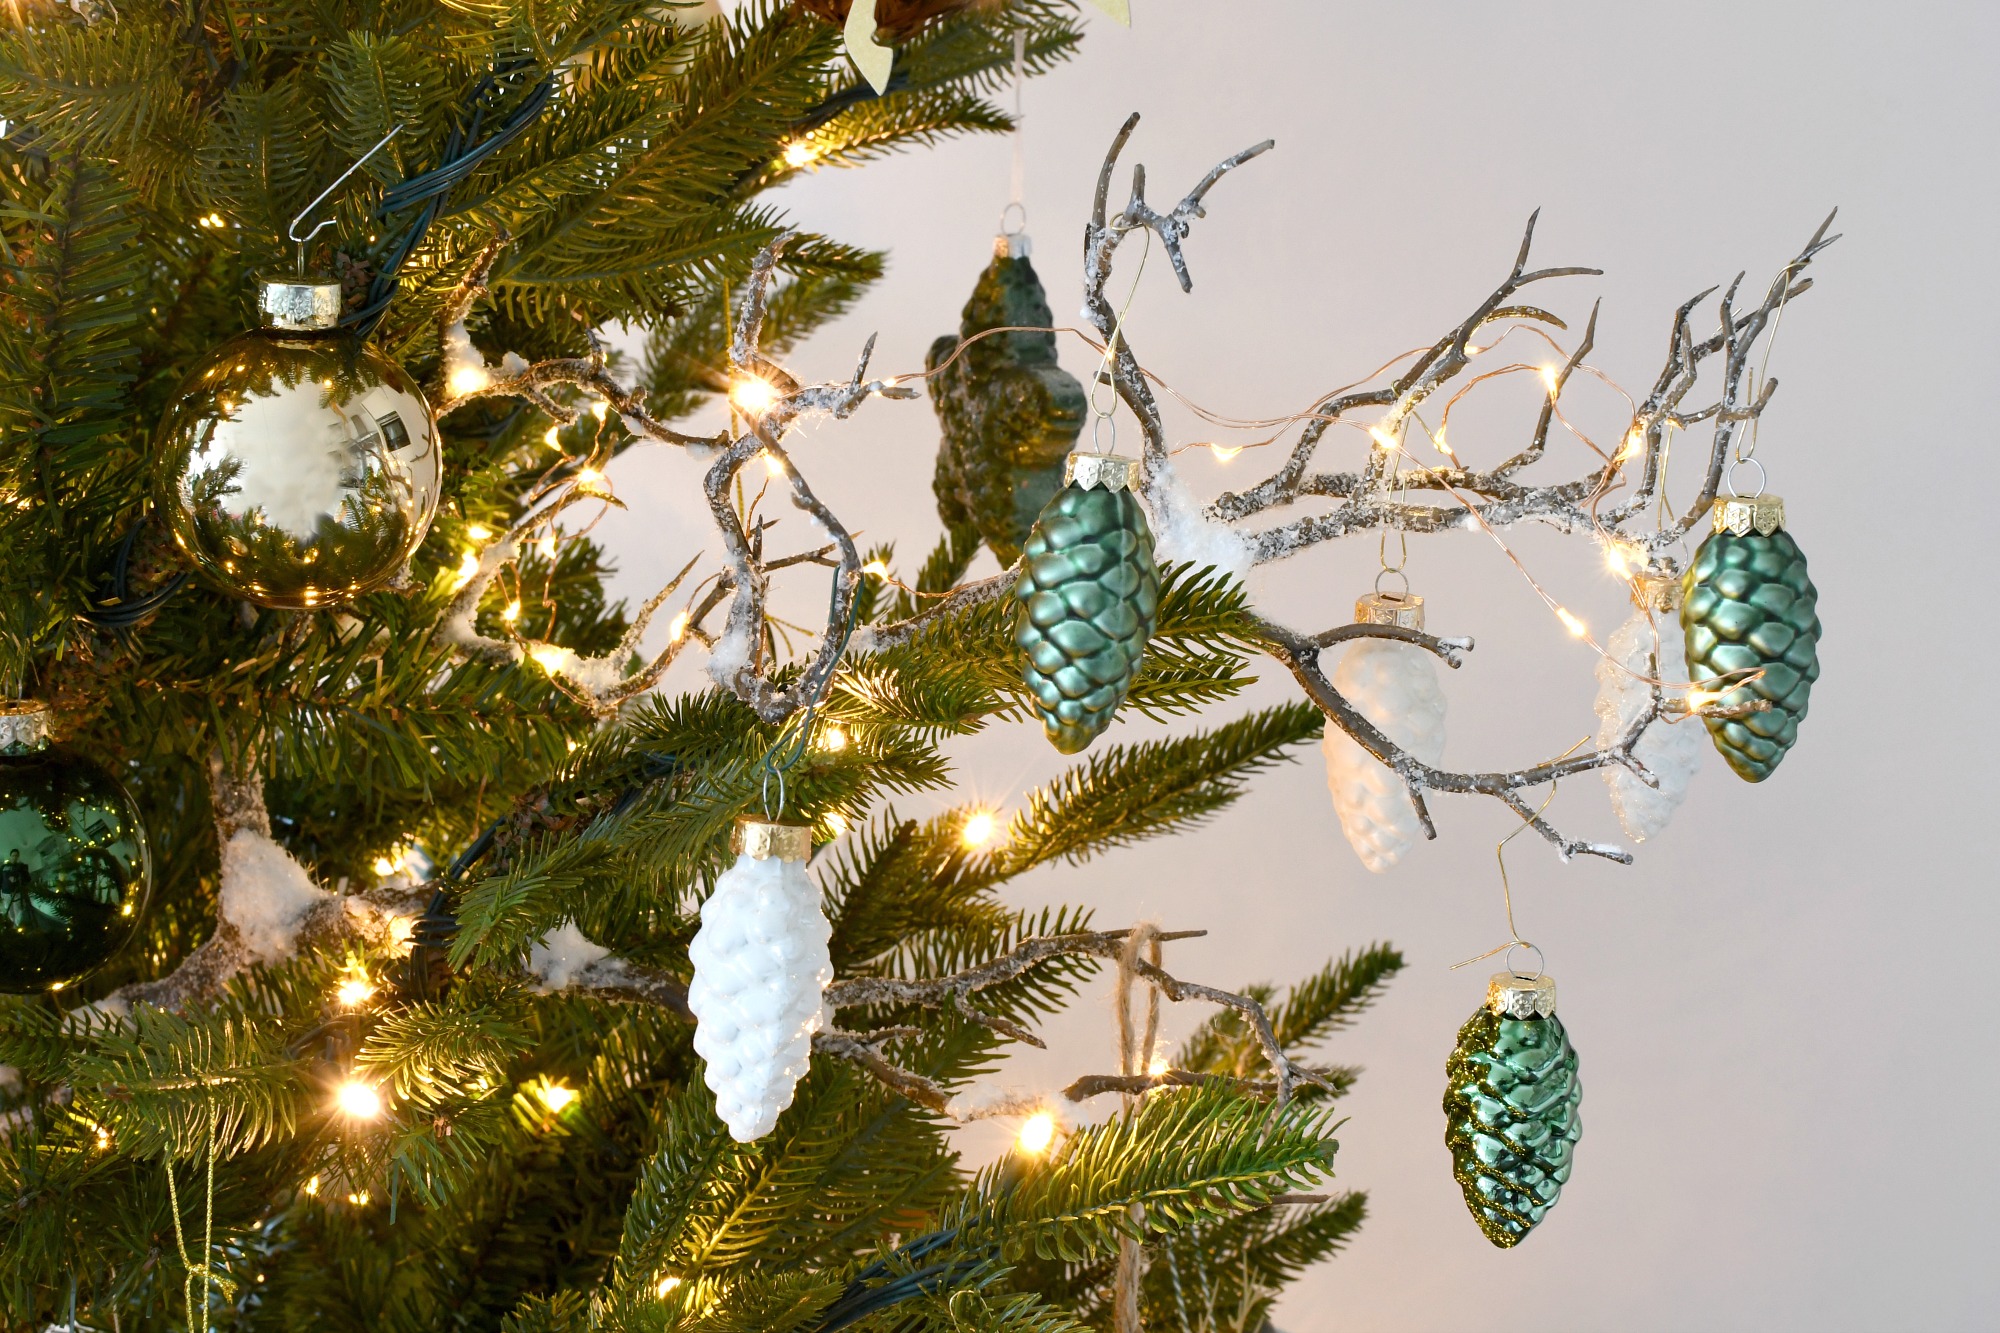 kerstboom met natuurlijke kerstdecoratie